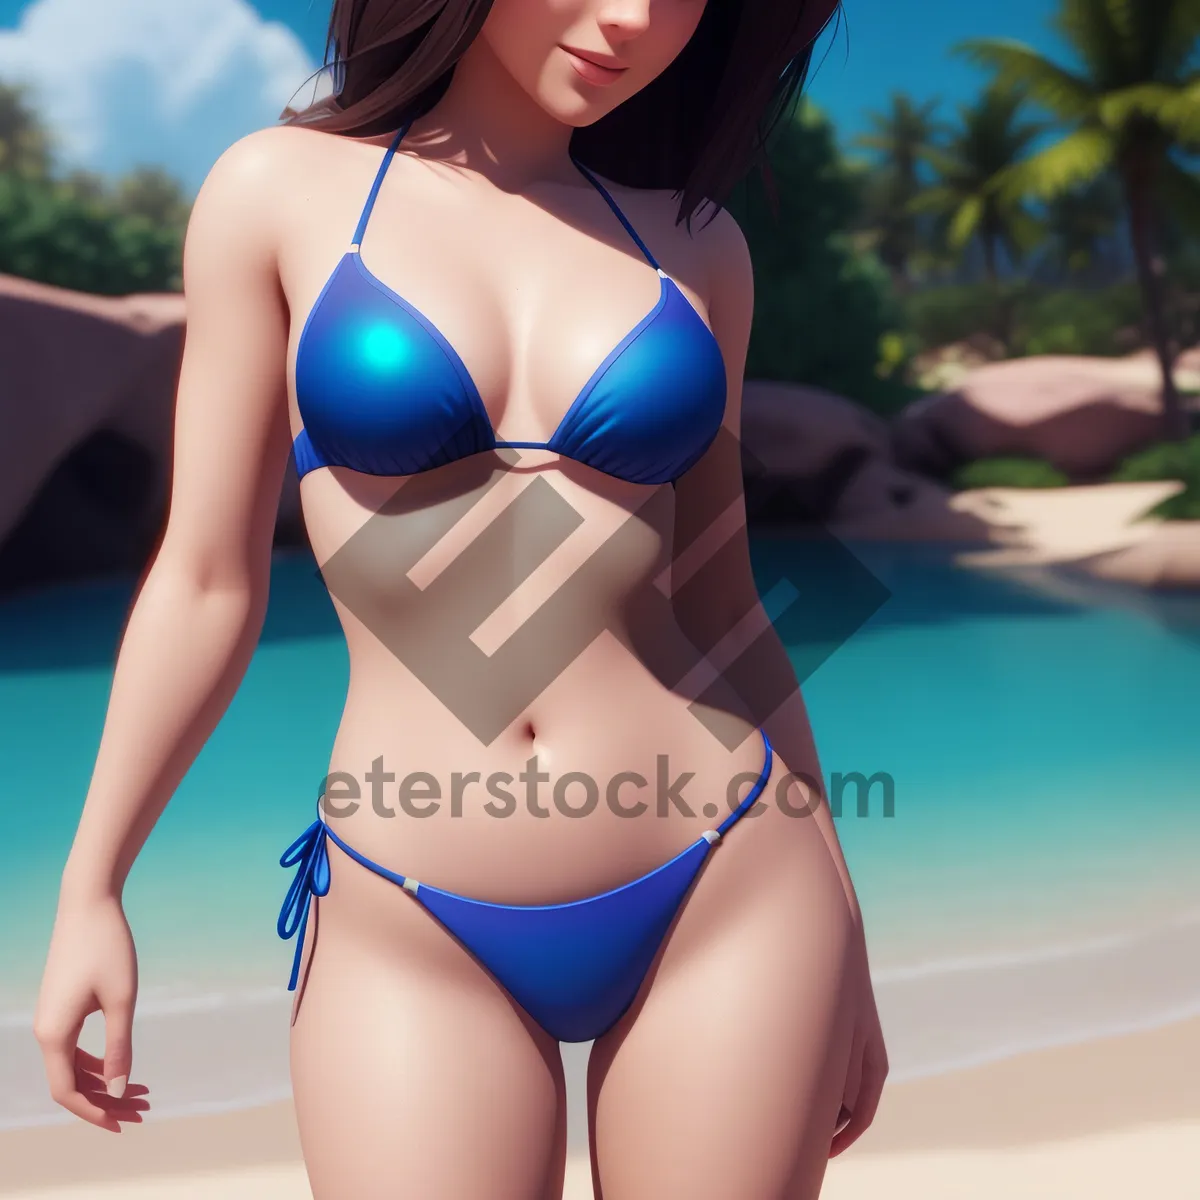 Picture of Beach Babe in Sensual Bikini Posing